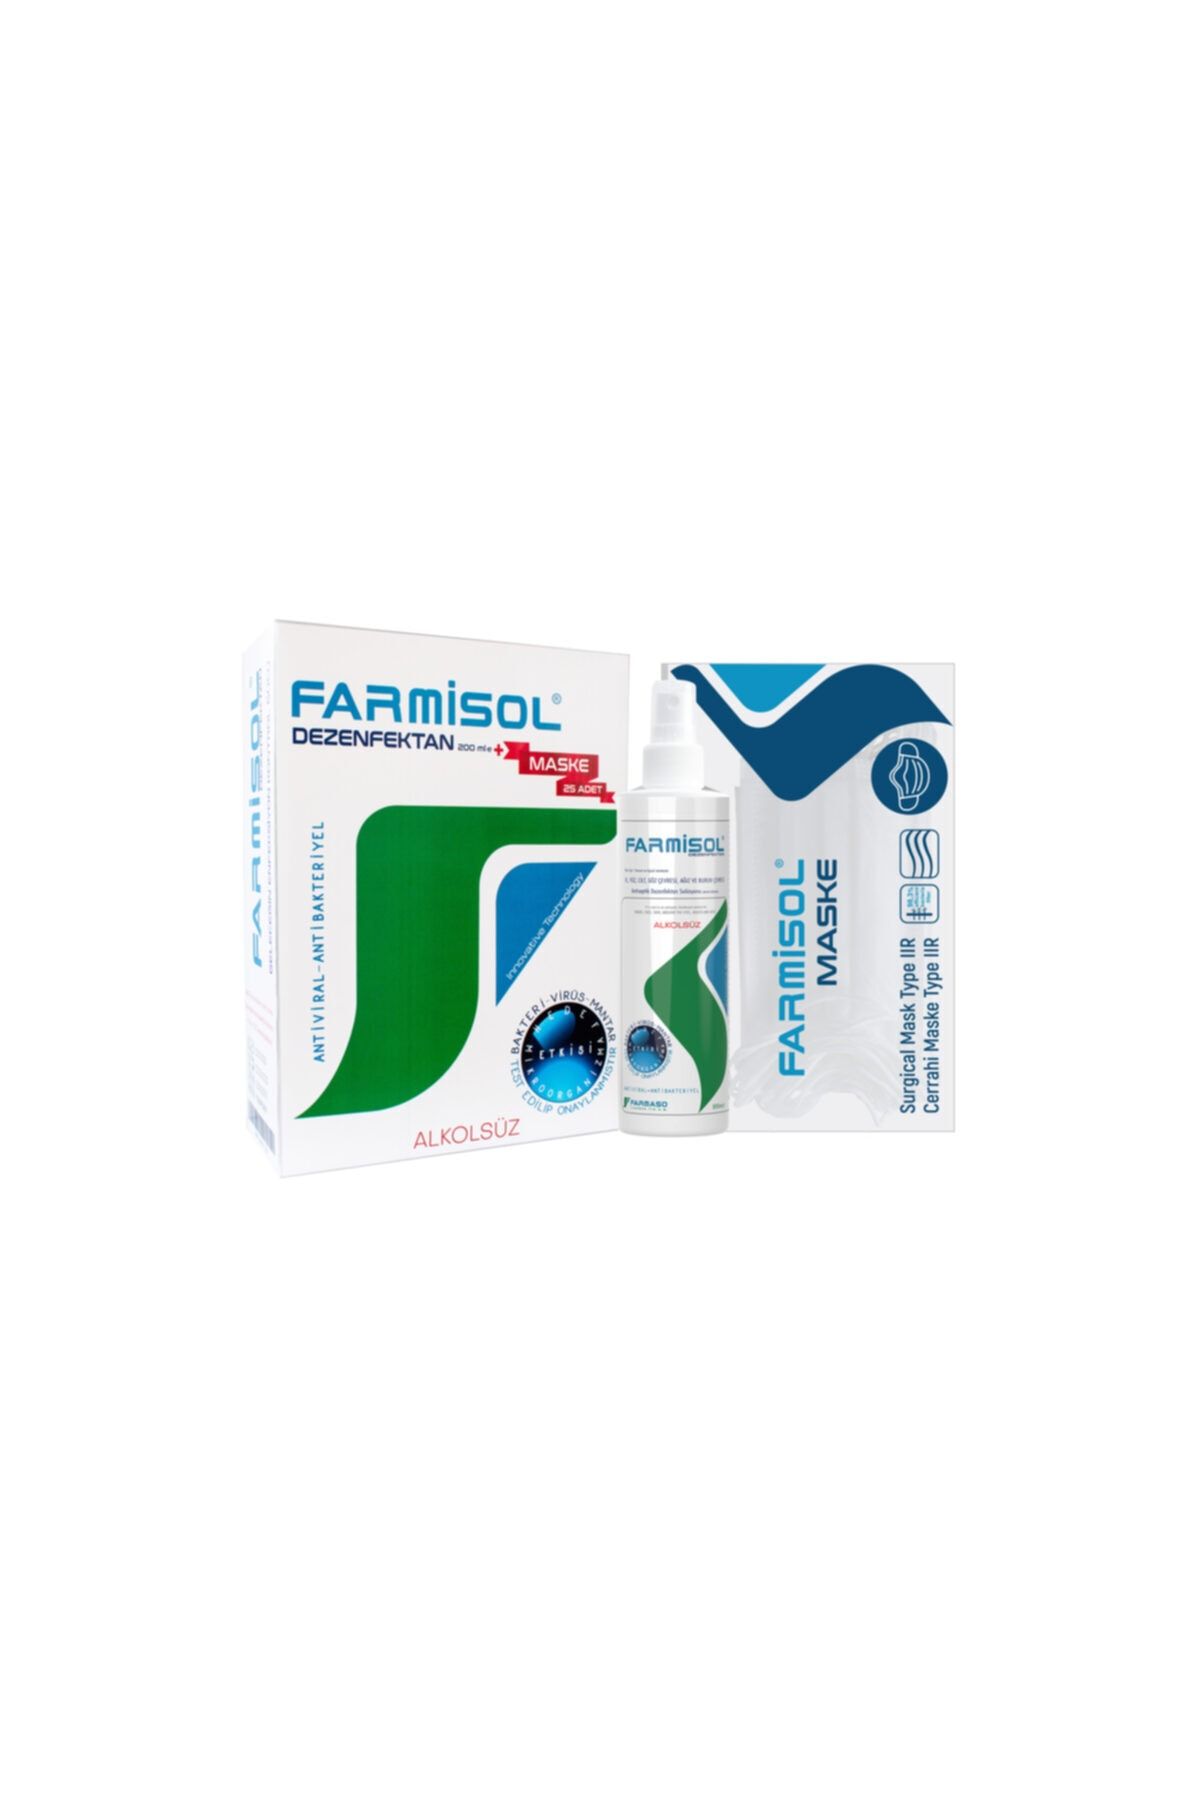 Farmisol Dezenfektan - Kişisel Kullanım 200 ml  25 Adet Maske